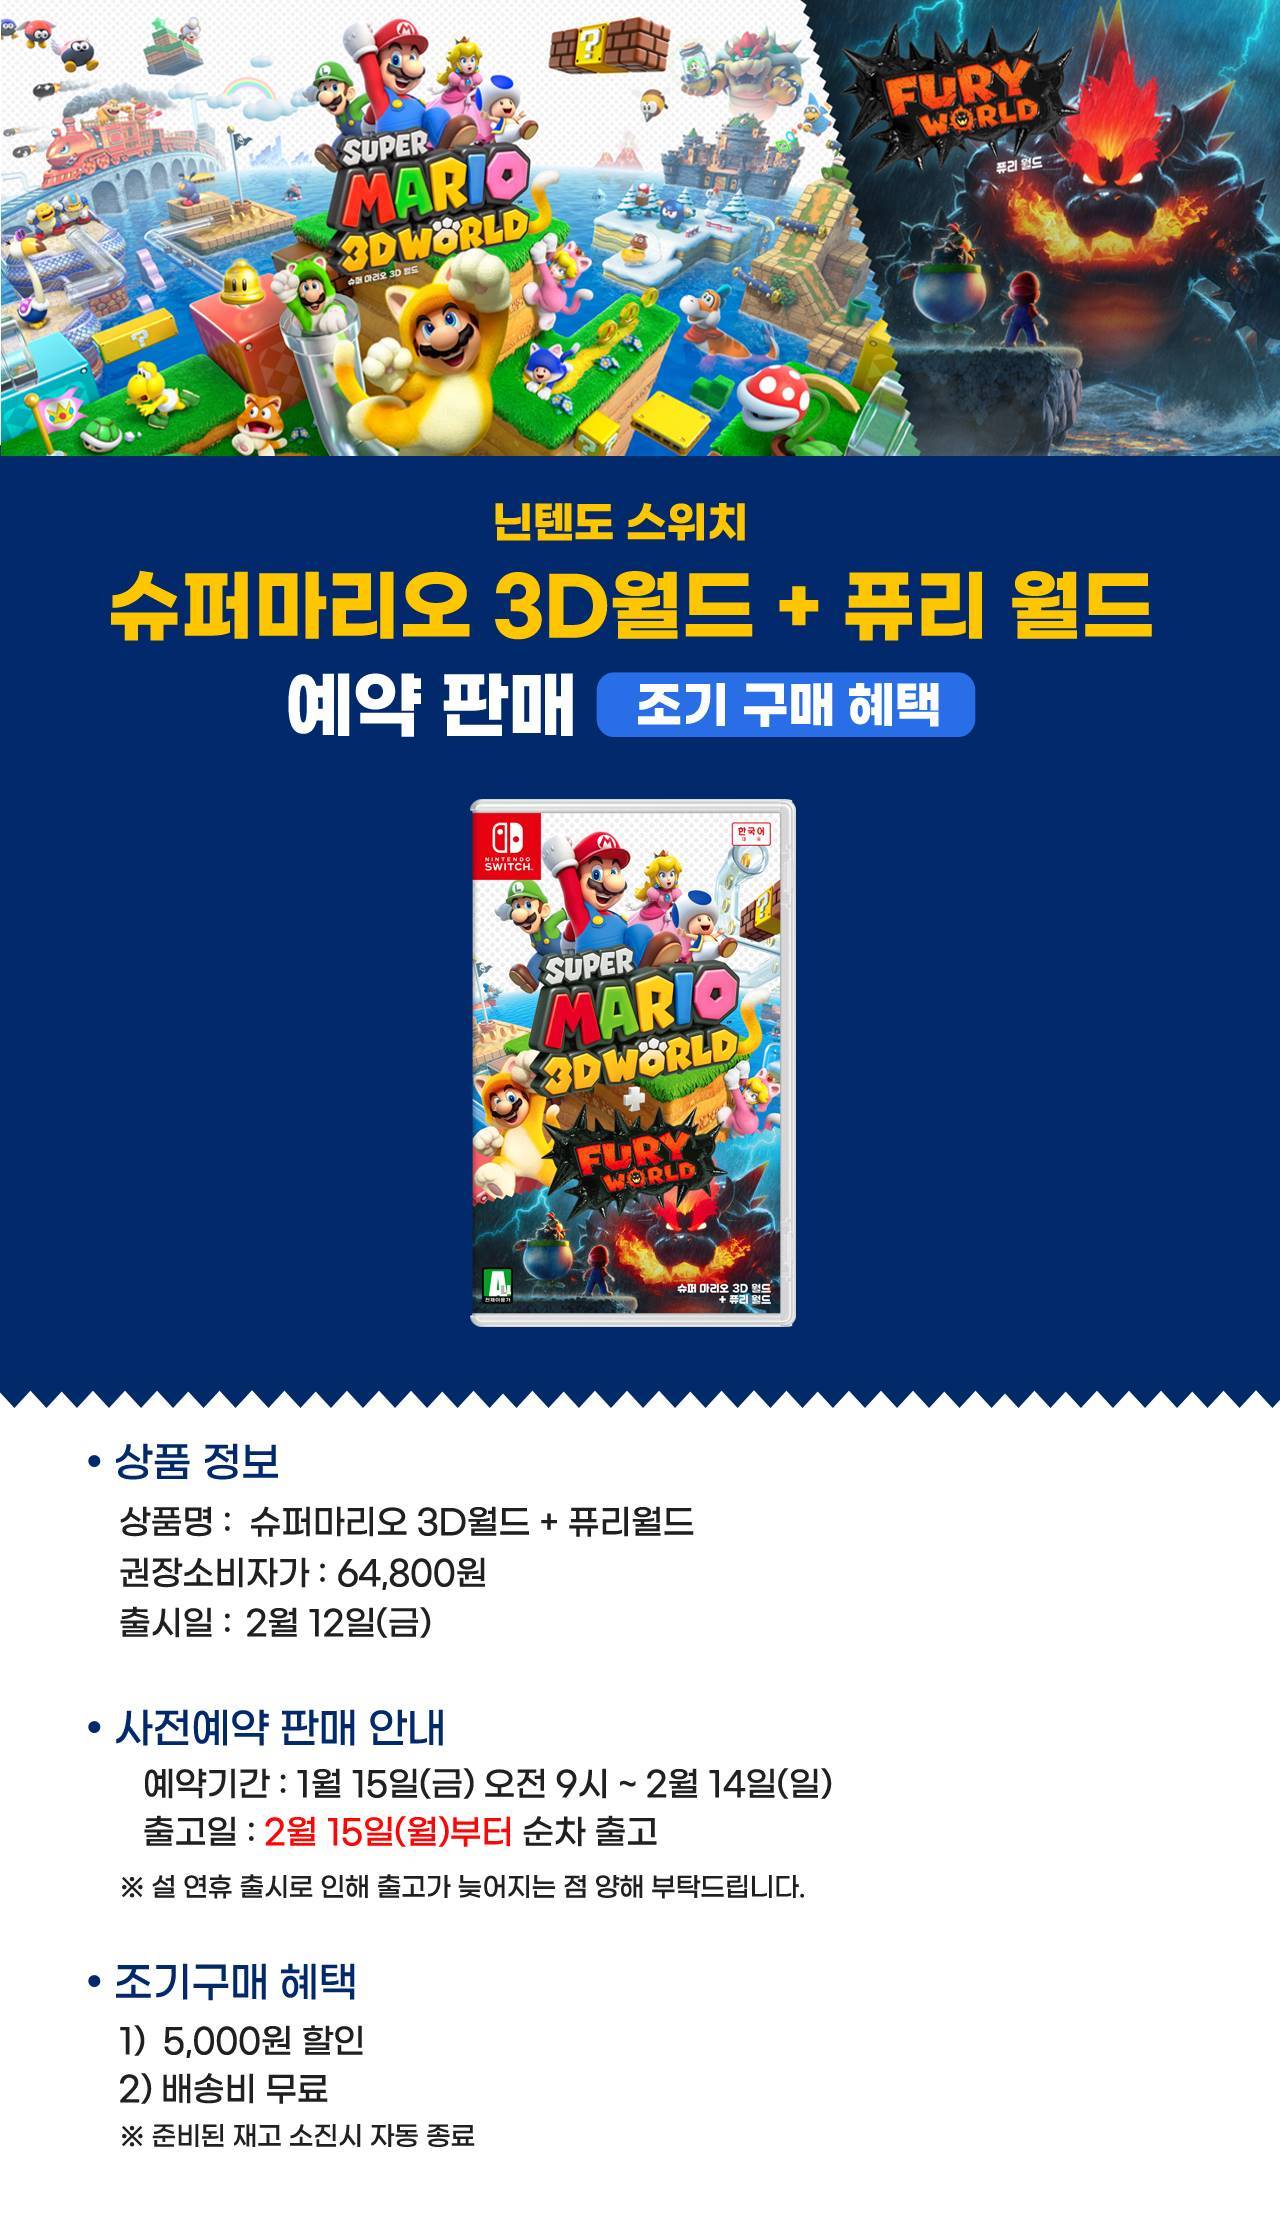 기획전 > 슈퍼마리오 3D월드 + 퓨리월드, 신세계적 쇼핑포털